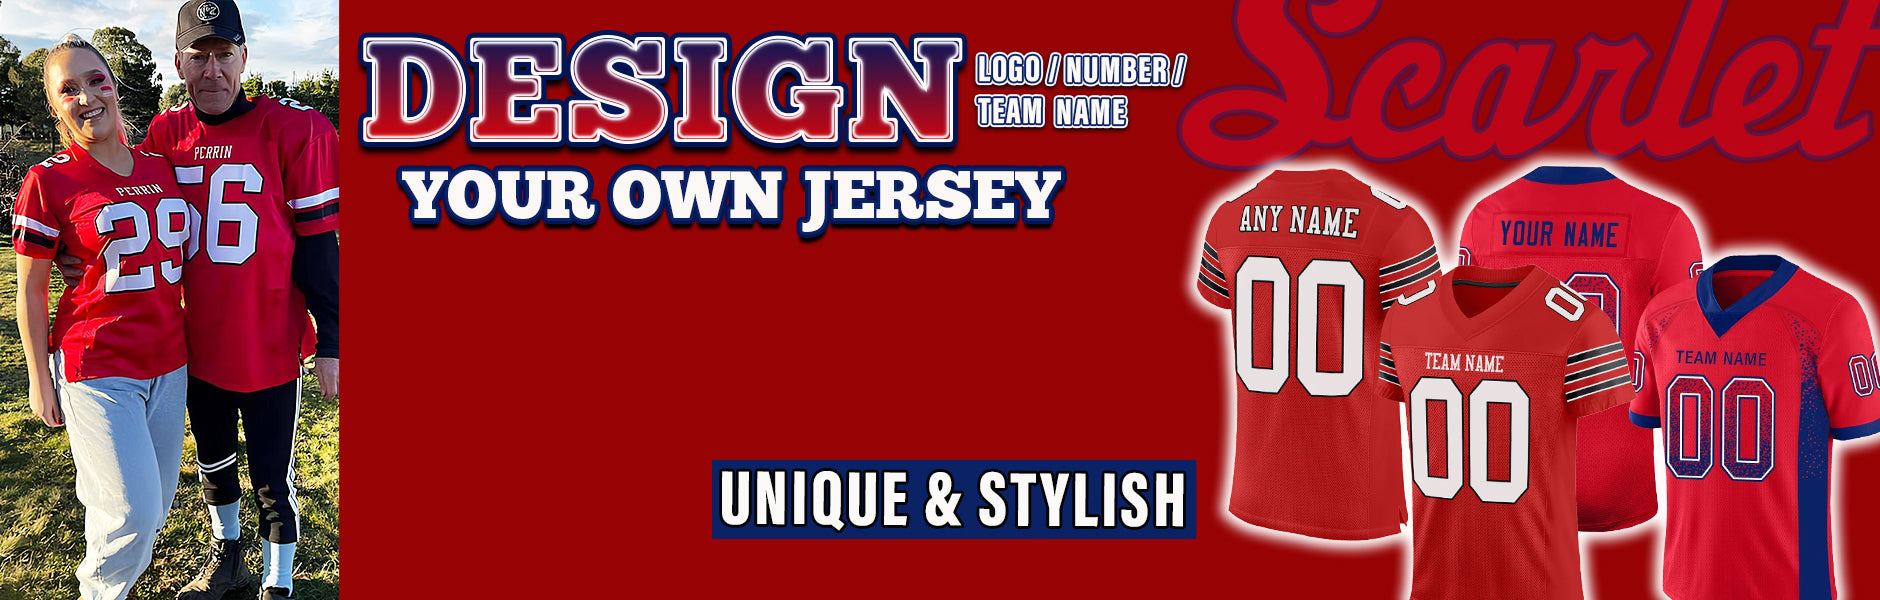 custom football scarlet jersey